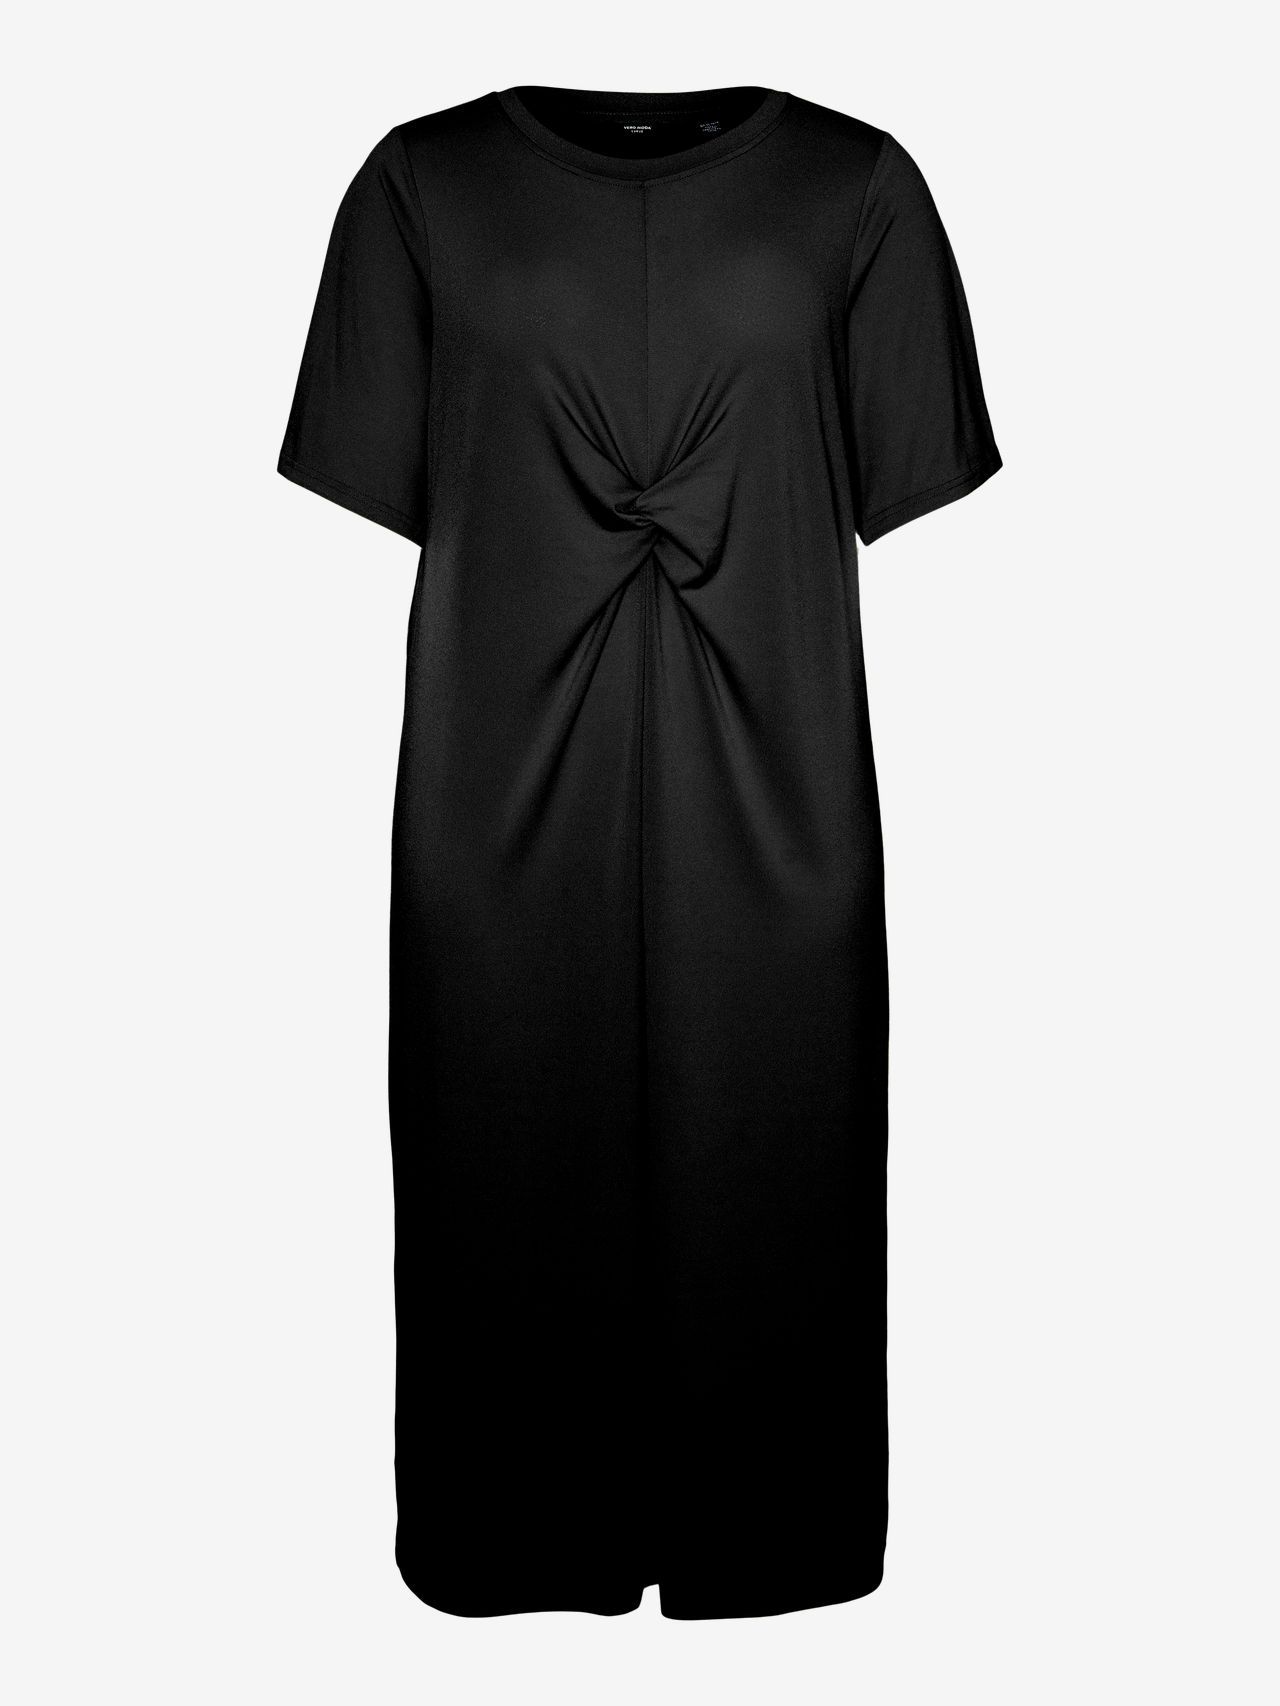 Vero Moda VMCRAQUEL Long dress -Black - 10312227